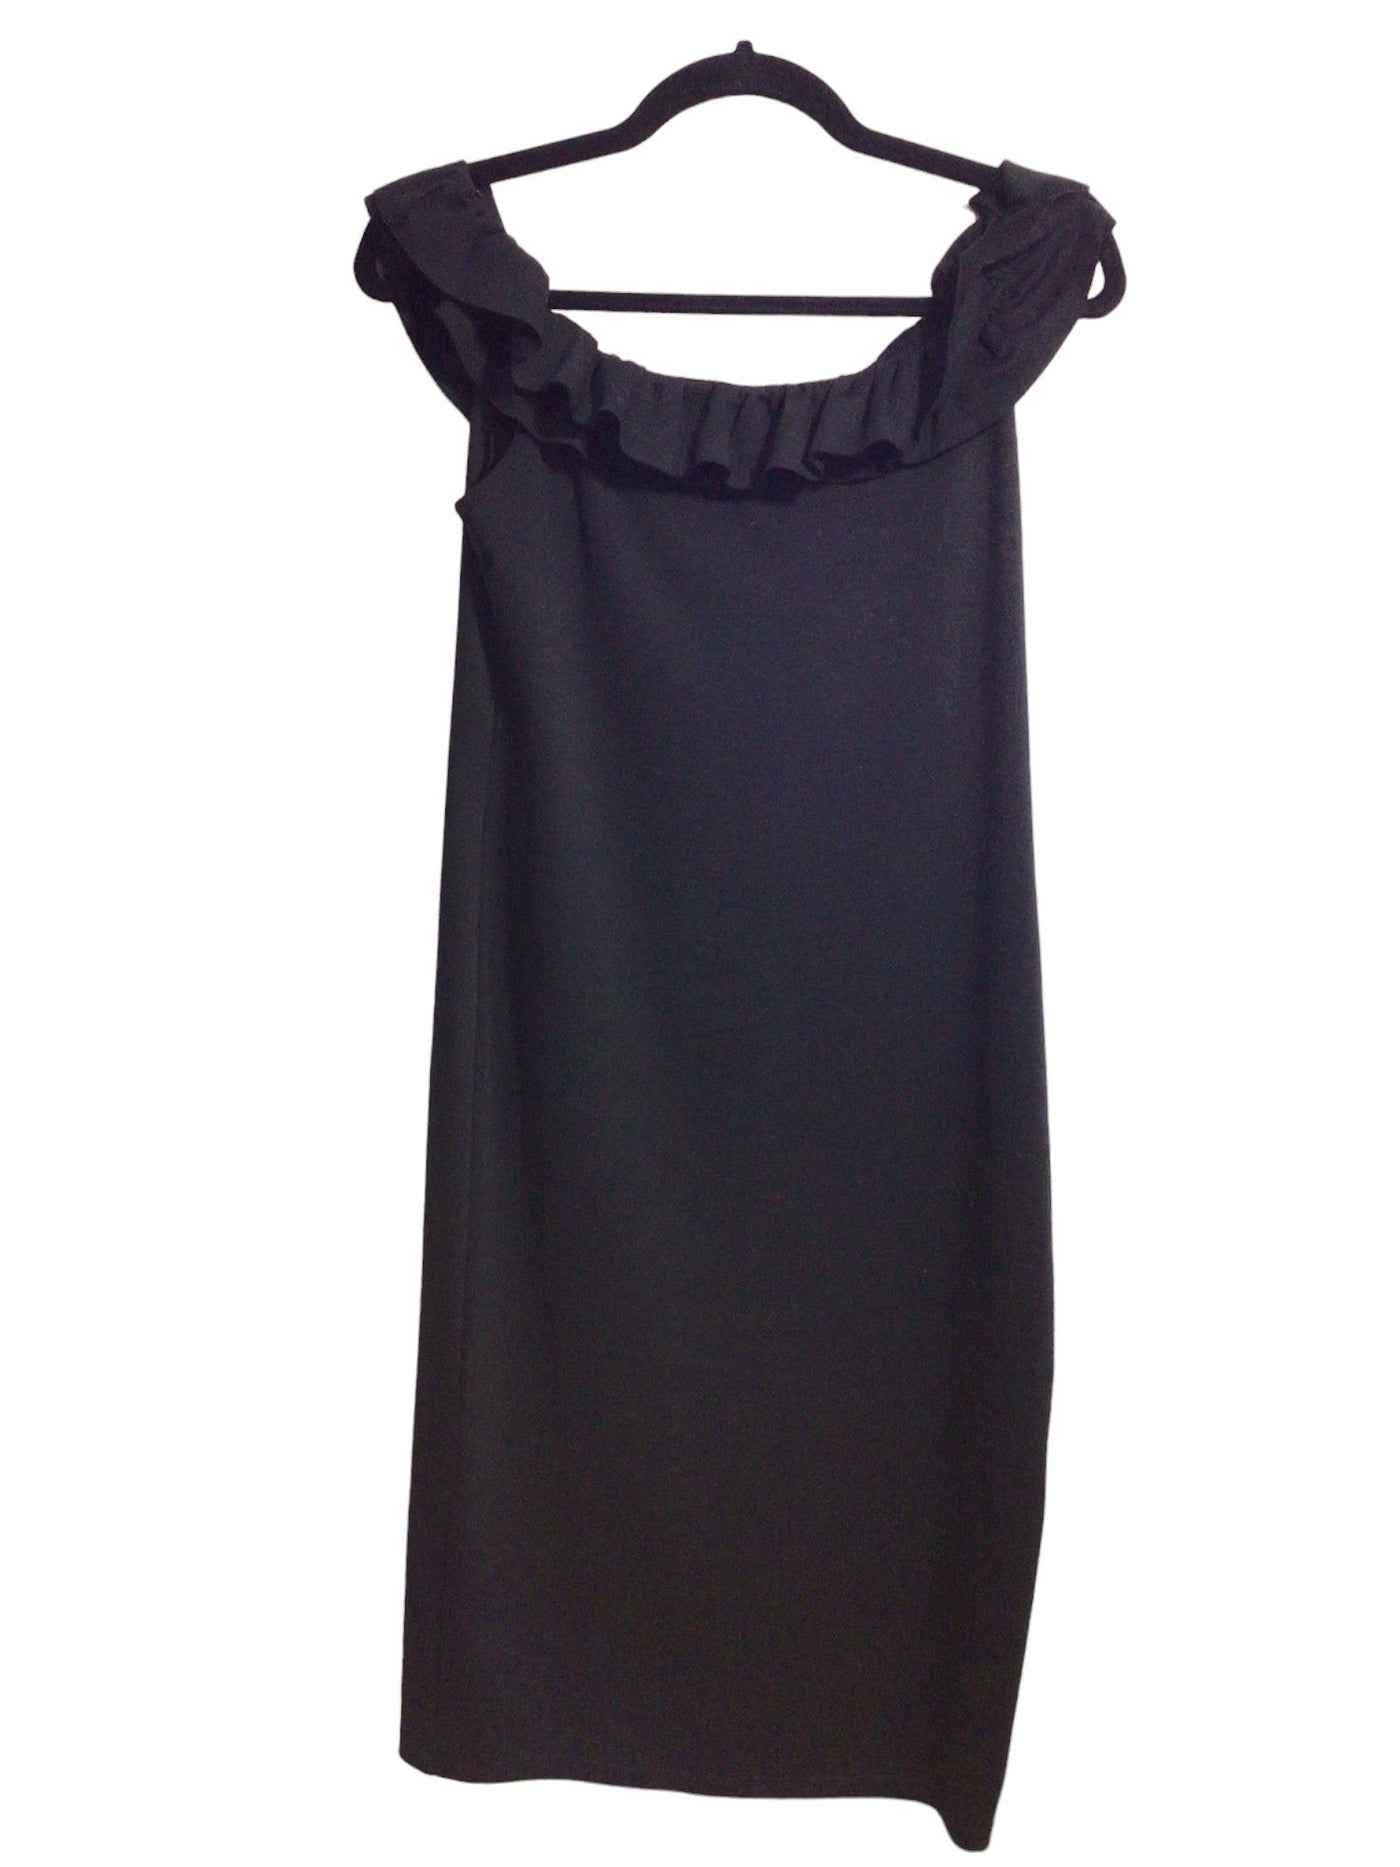 ZARA Women Sheath Dresses Regular fit in Black - Size L | 11.25 $ KOOP